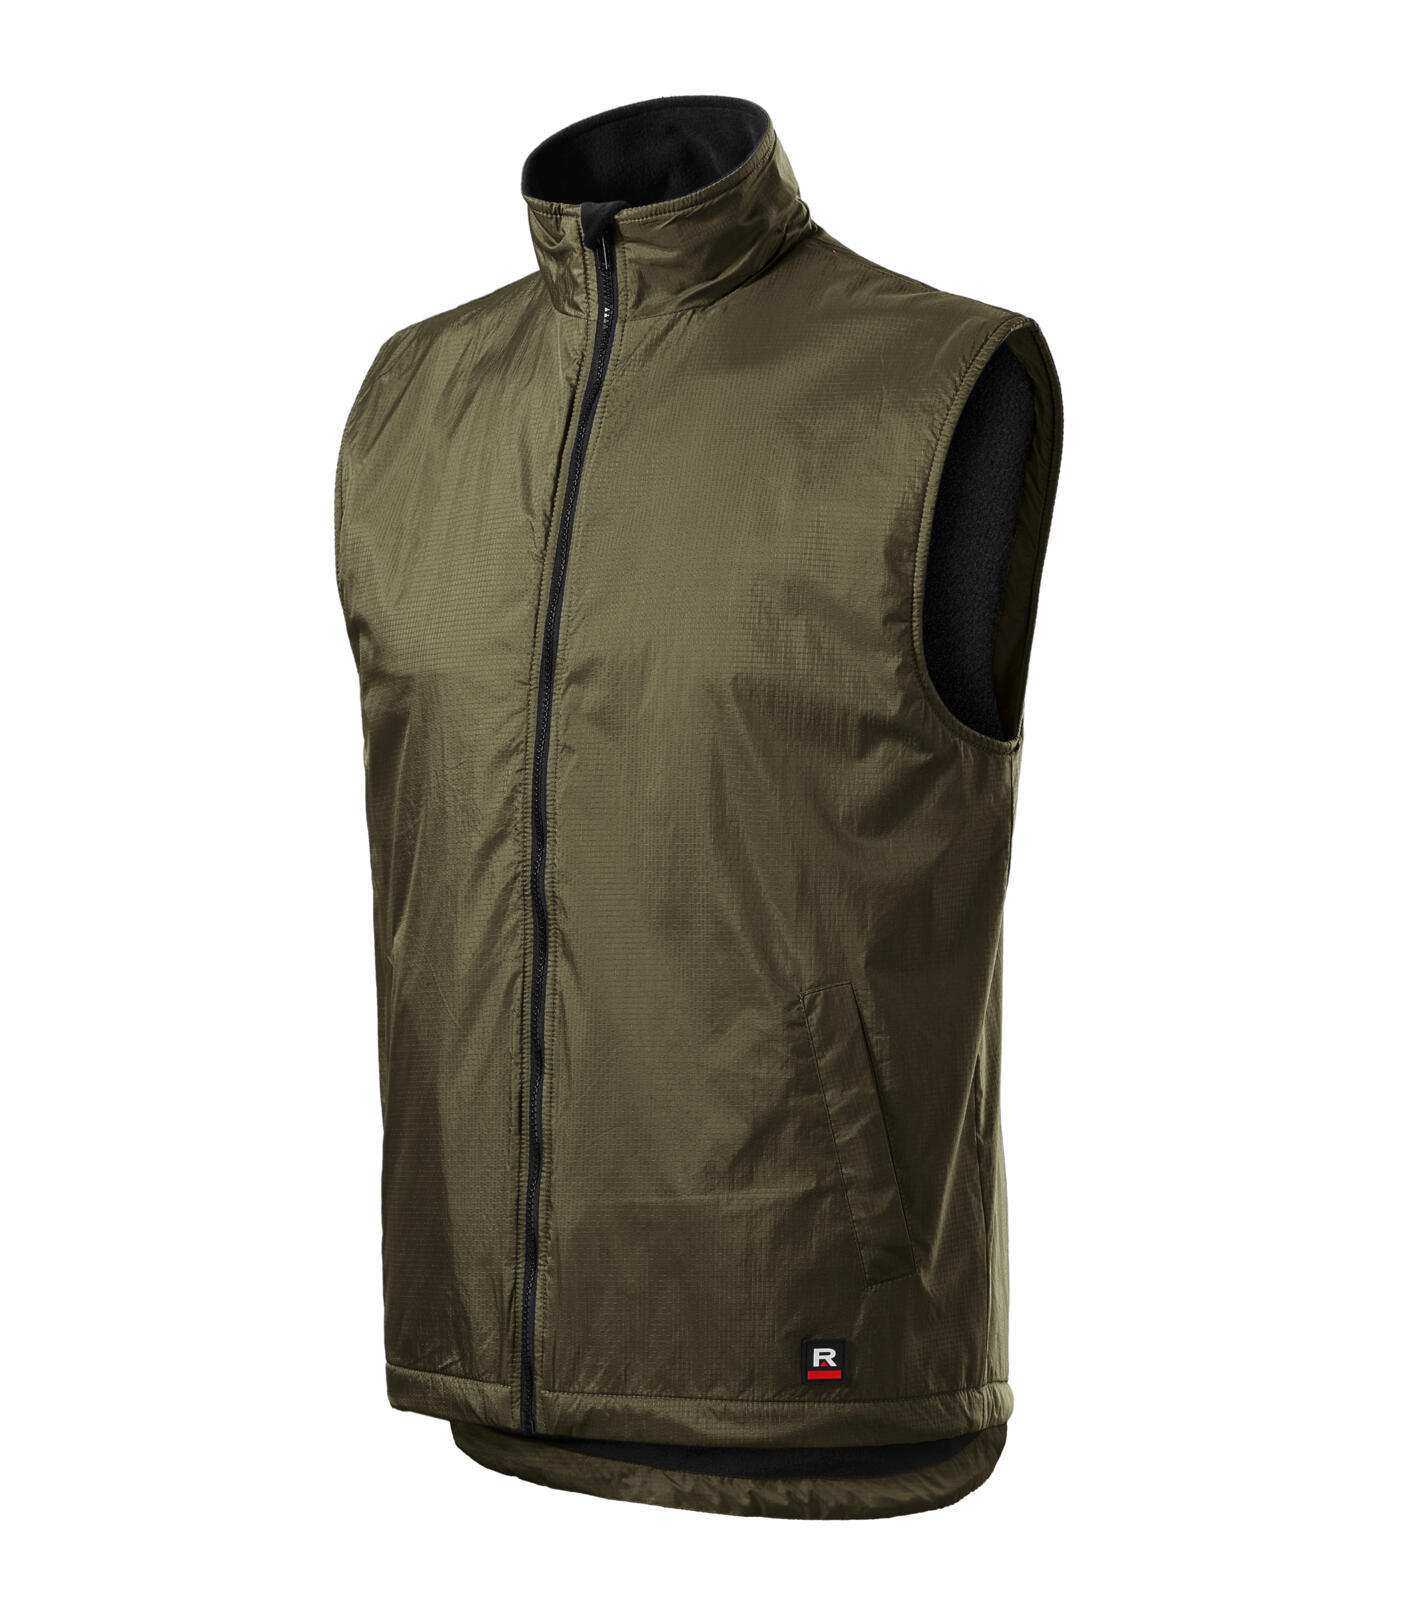 Unisex zateplená vesta Rimeck Body Warmer 509 - veľkosť: L, farba: military